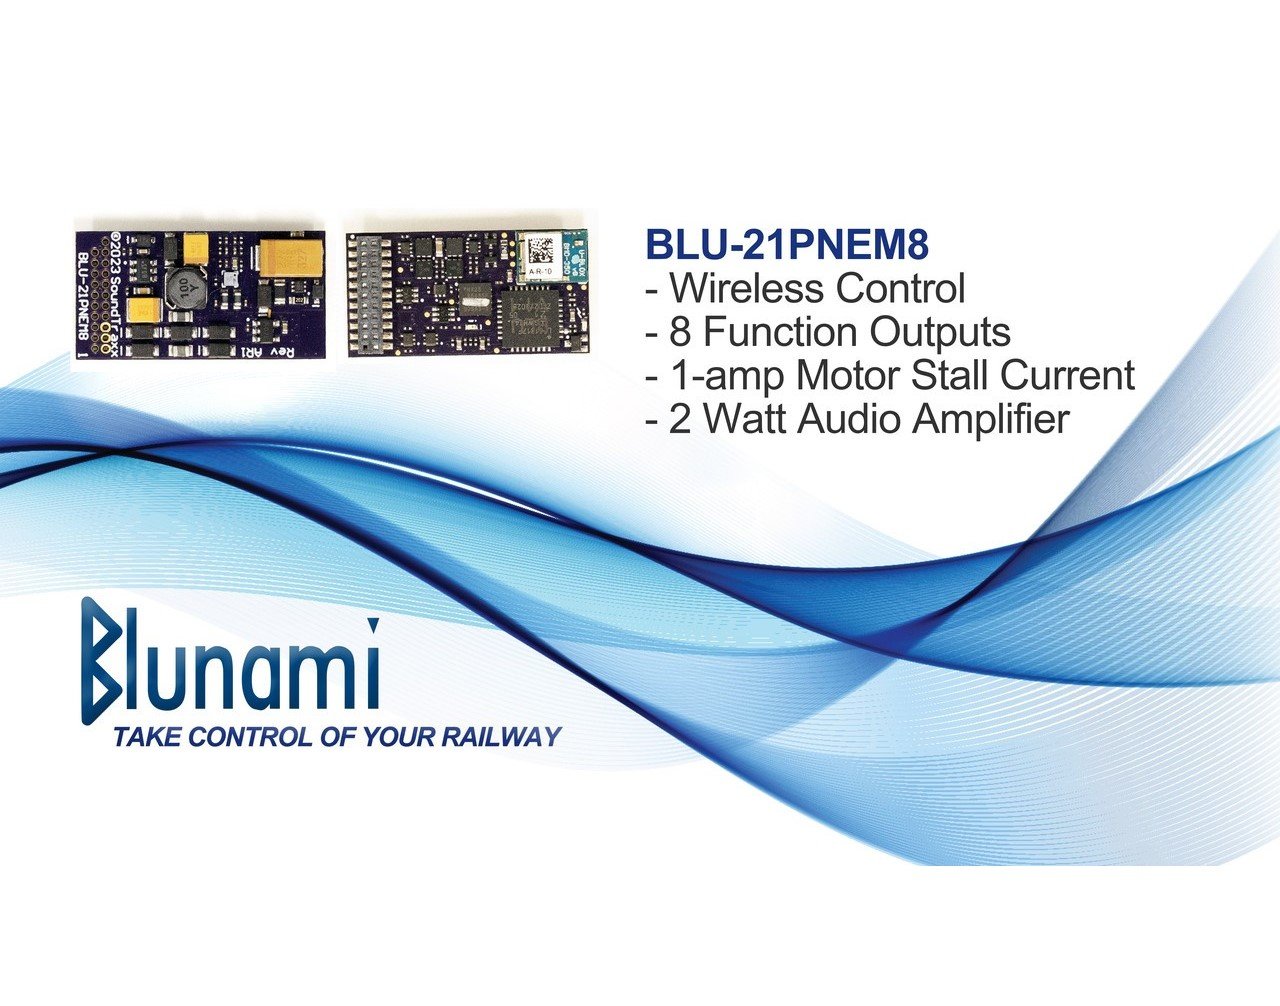 SoundTraxx Blunami BLU-21PNEM8 885610 GE Diesel Wireless DCC/SOUND Decoder